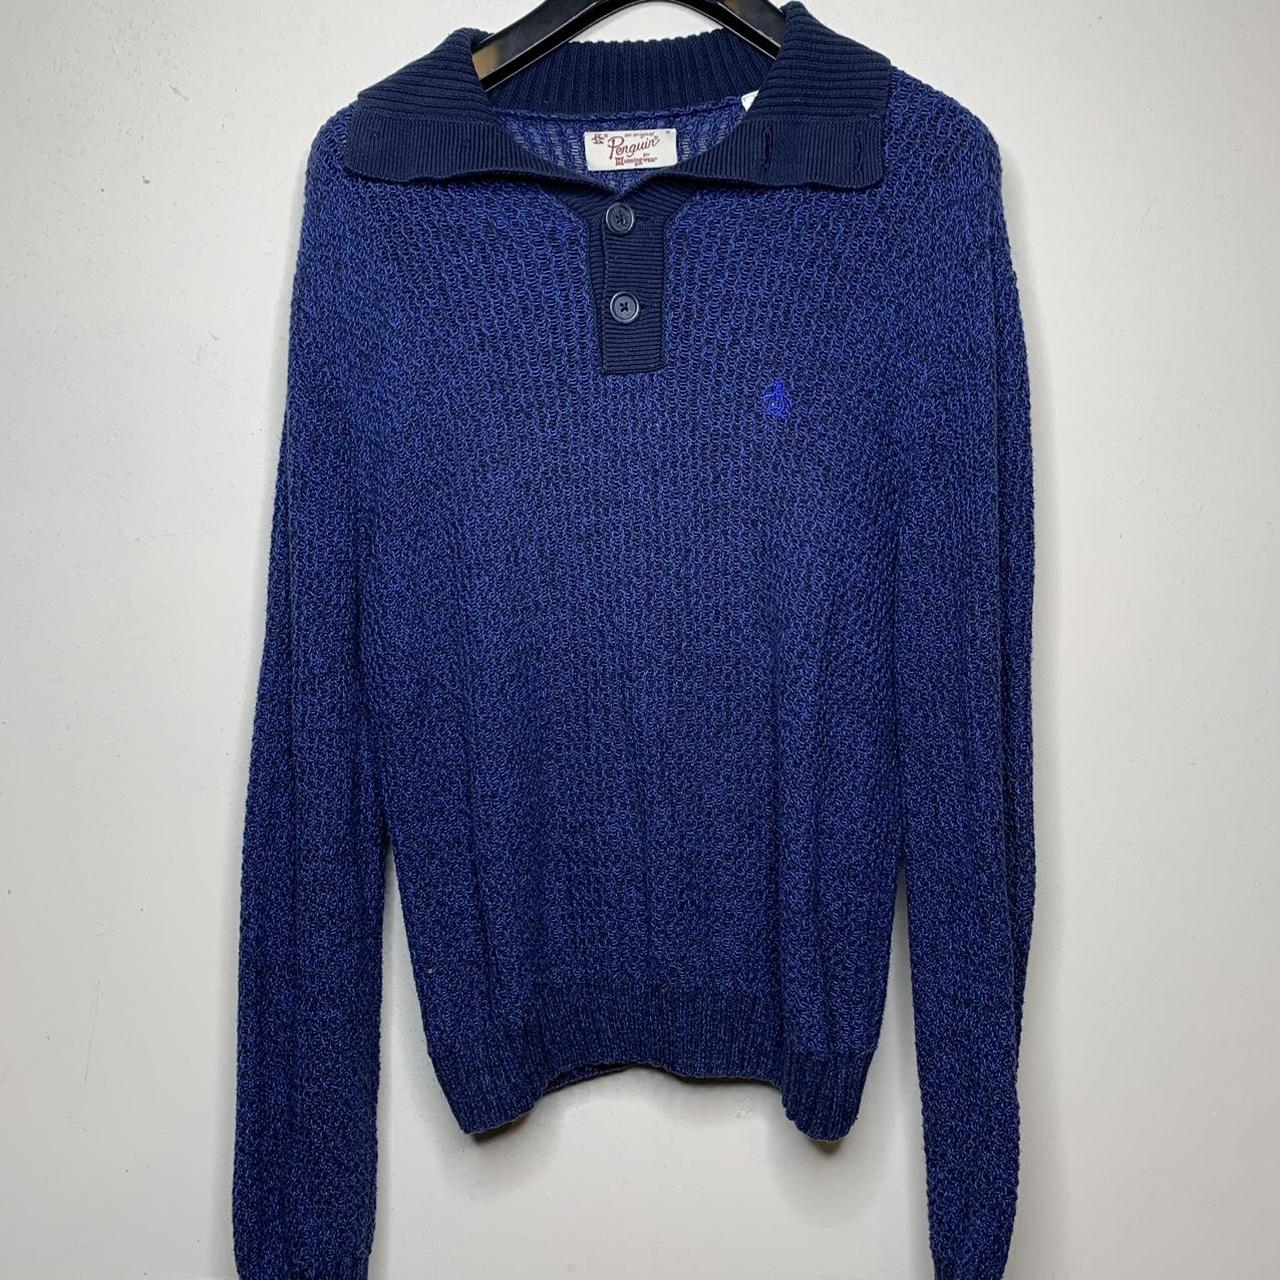 Product Image 1 - Original Penguin Blue knit Men